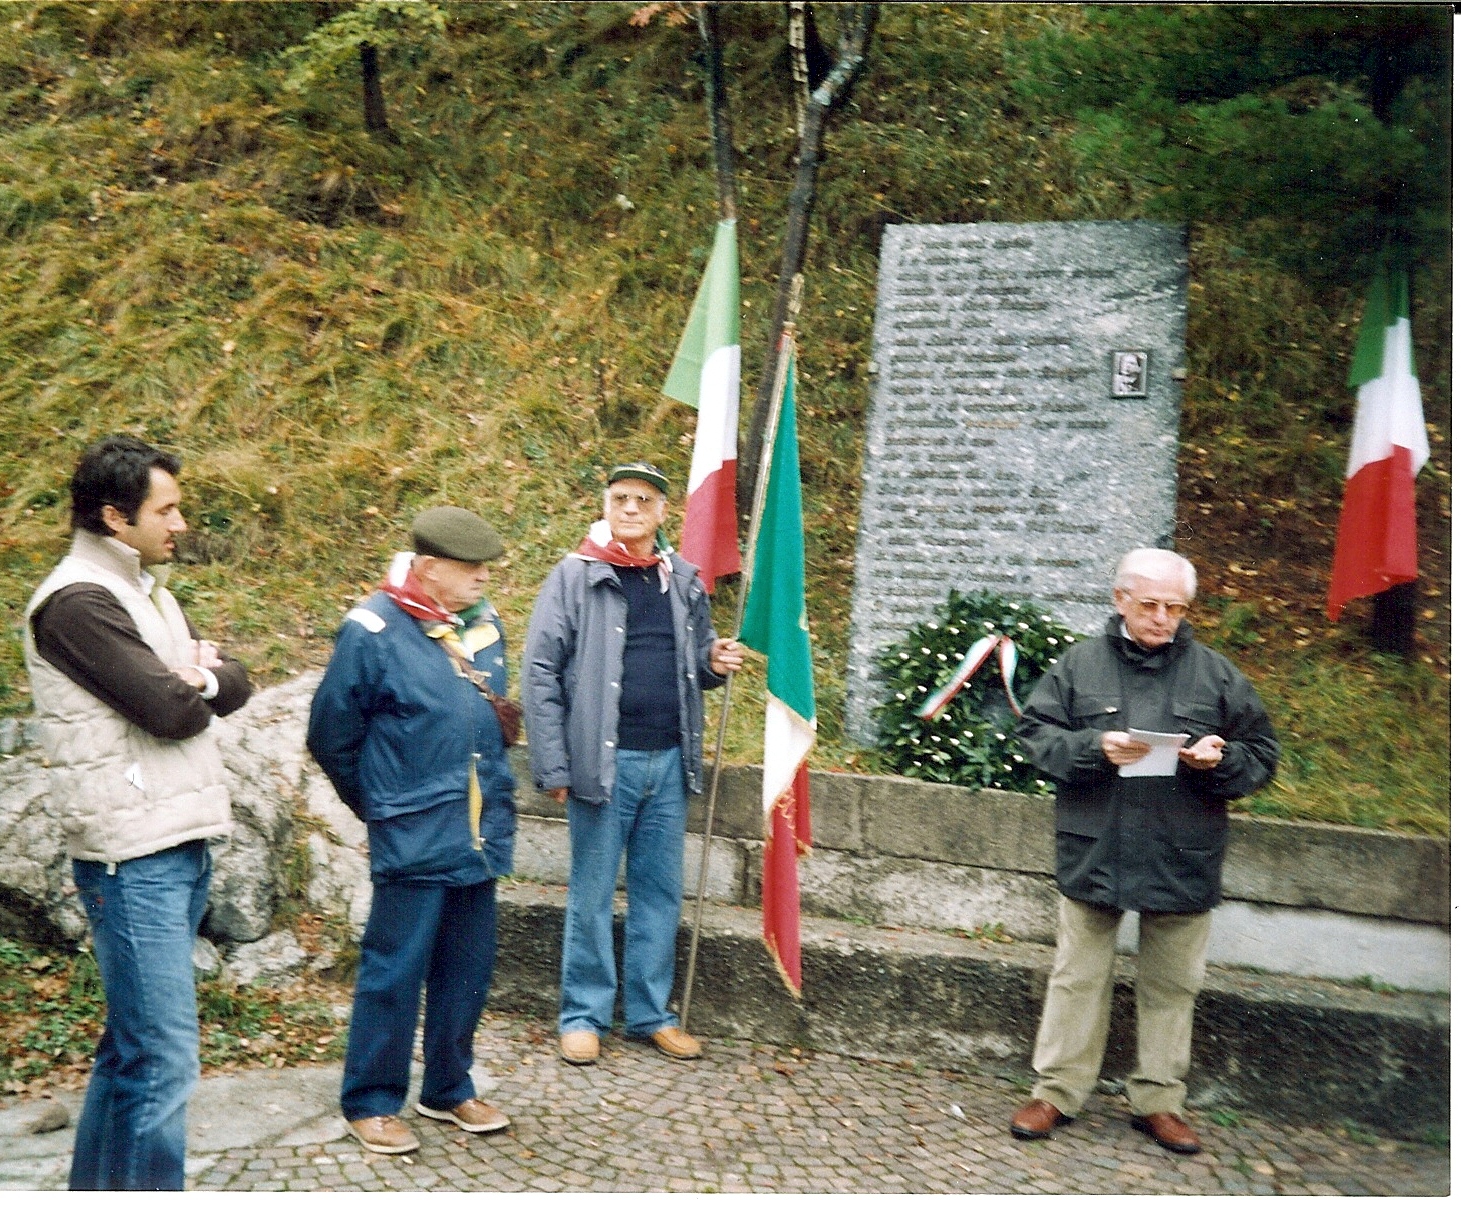 Inaugurazione targa in memoria dei partigiani ai Piani d'Erna - Clicca sulla foto per la versione ad alta risoluzione